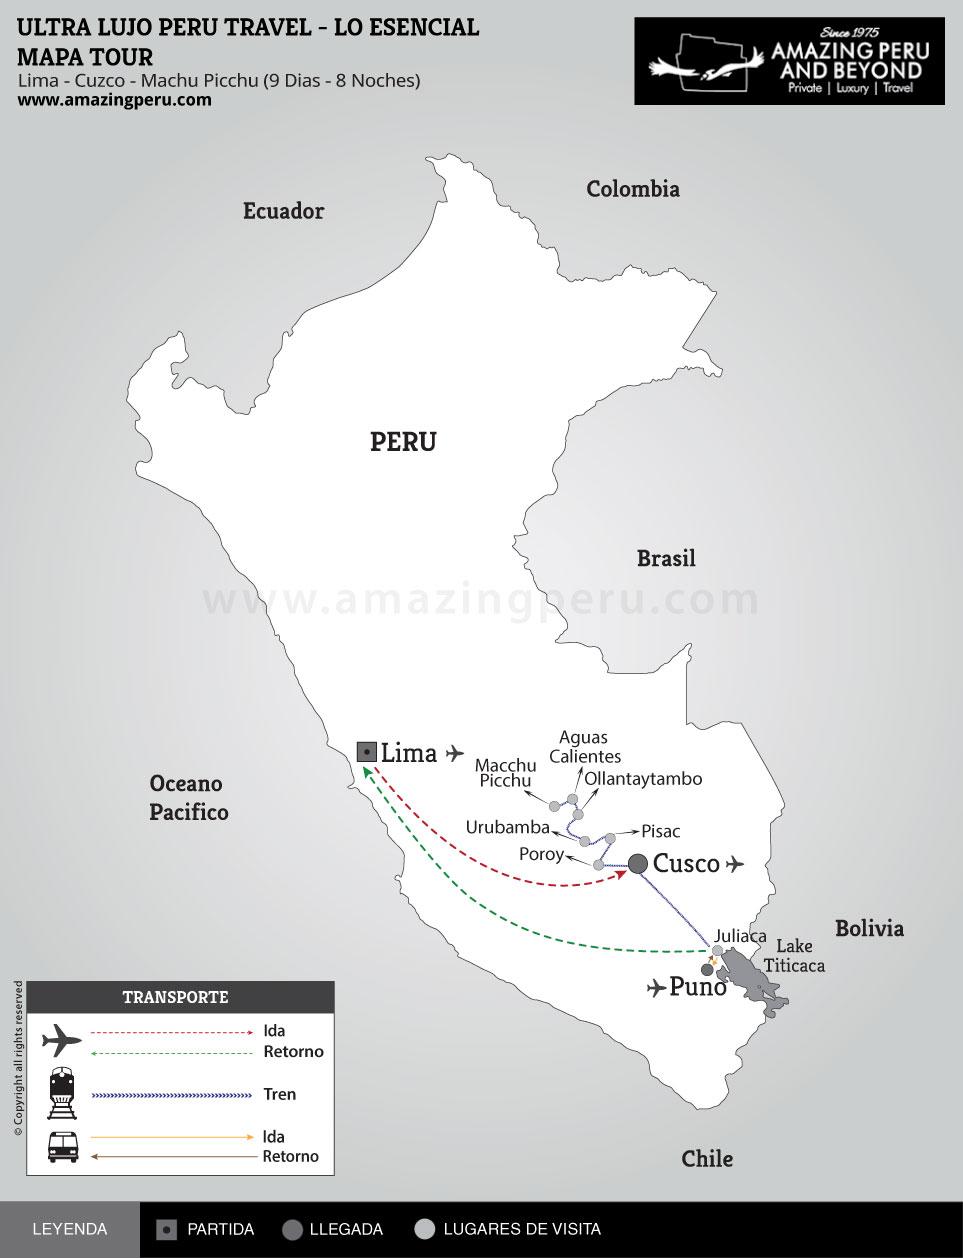 Viajes al Peru de Super Lujo - Ultra Lujo - Un descubrimiento personal